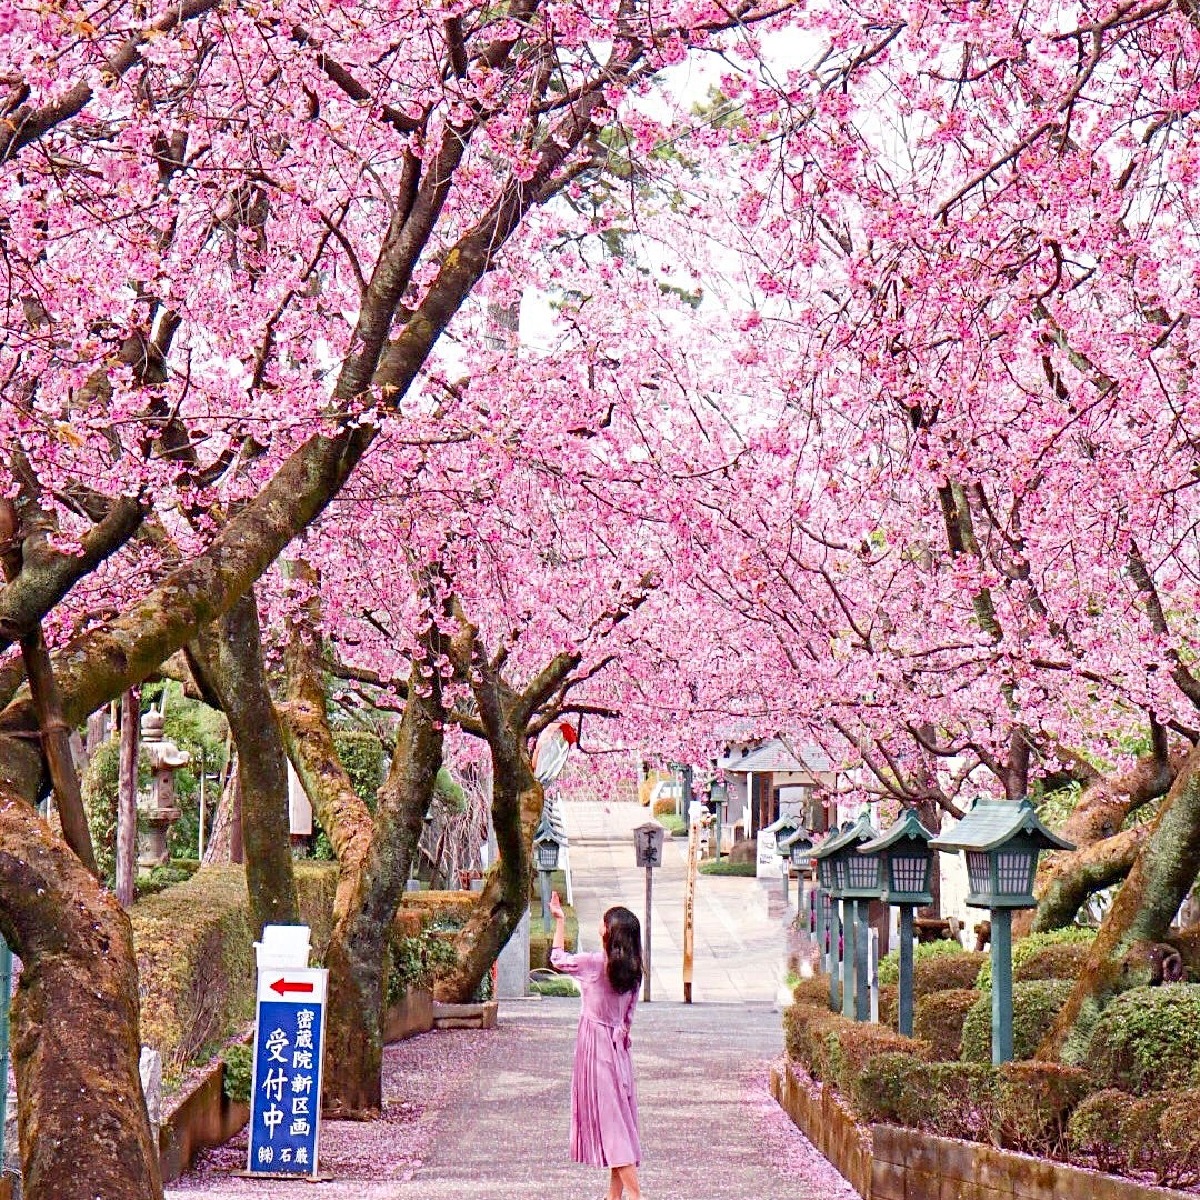 【埼玉】穴場桜スポットでお花見を楽しもう〜密蔵院〜